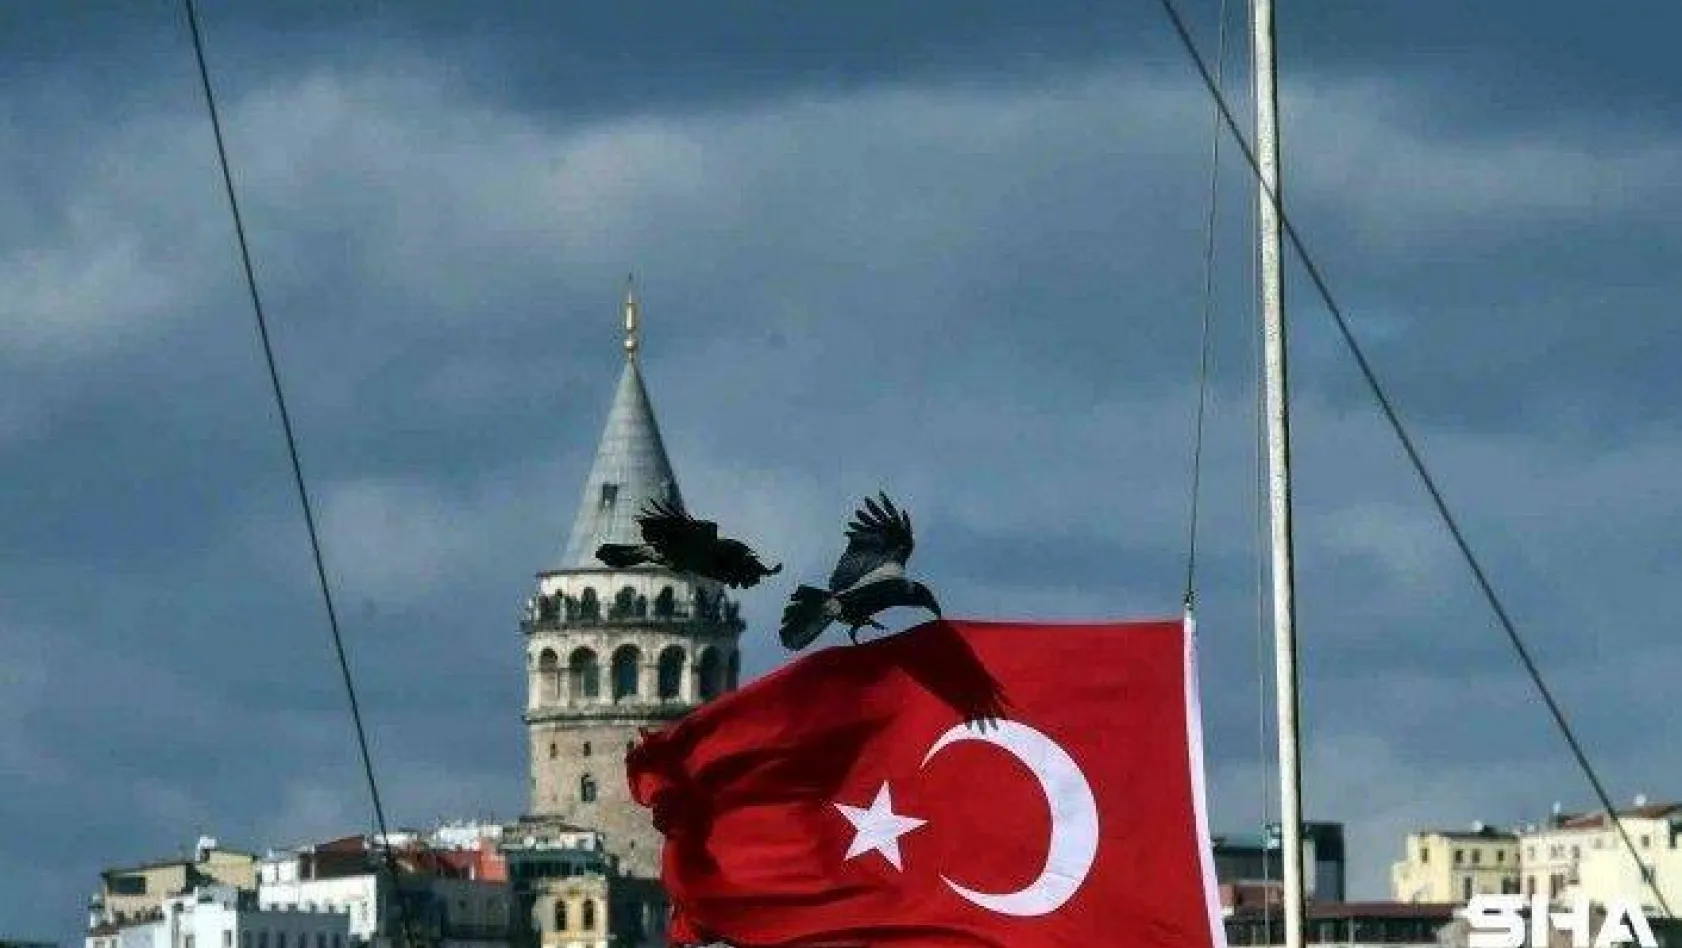 Kuşlar fırtınadan korunmak için Türk bayrağına tutundu